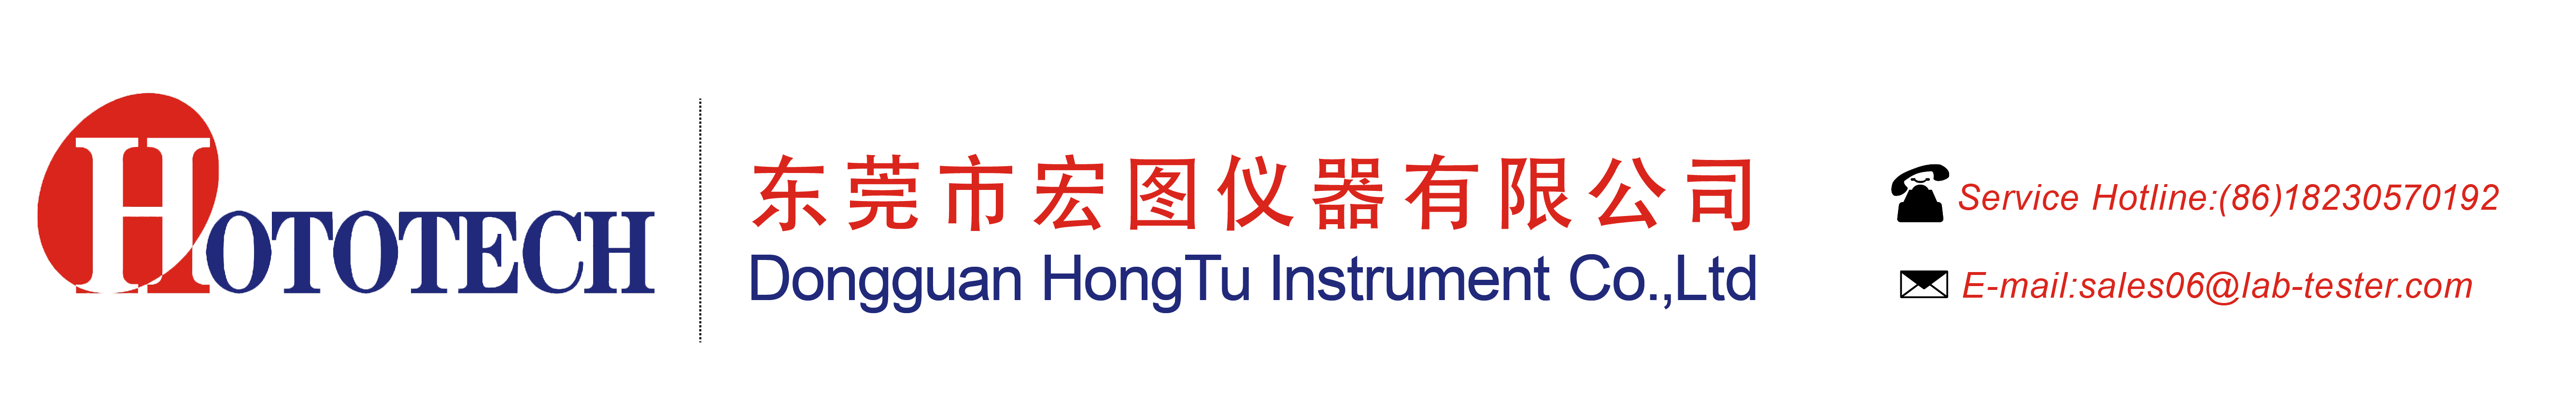 Dongguan Hongtu Instrument Co., Ltd., ตงกวน HONGTU Instrument Co., Ltd.